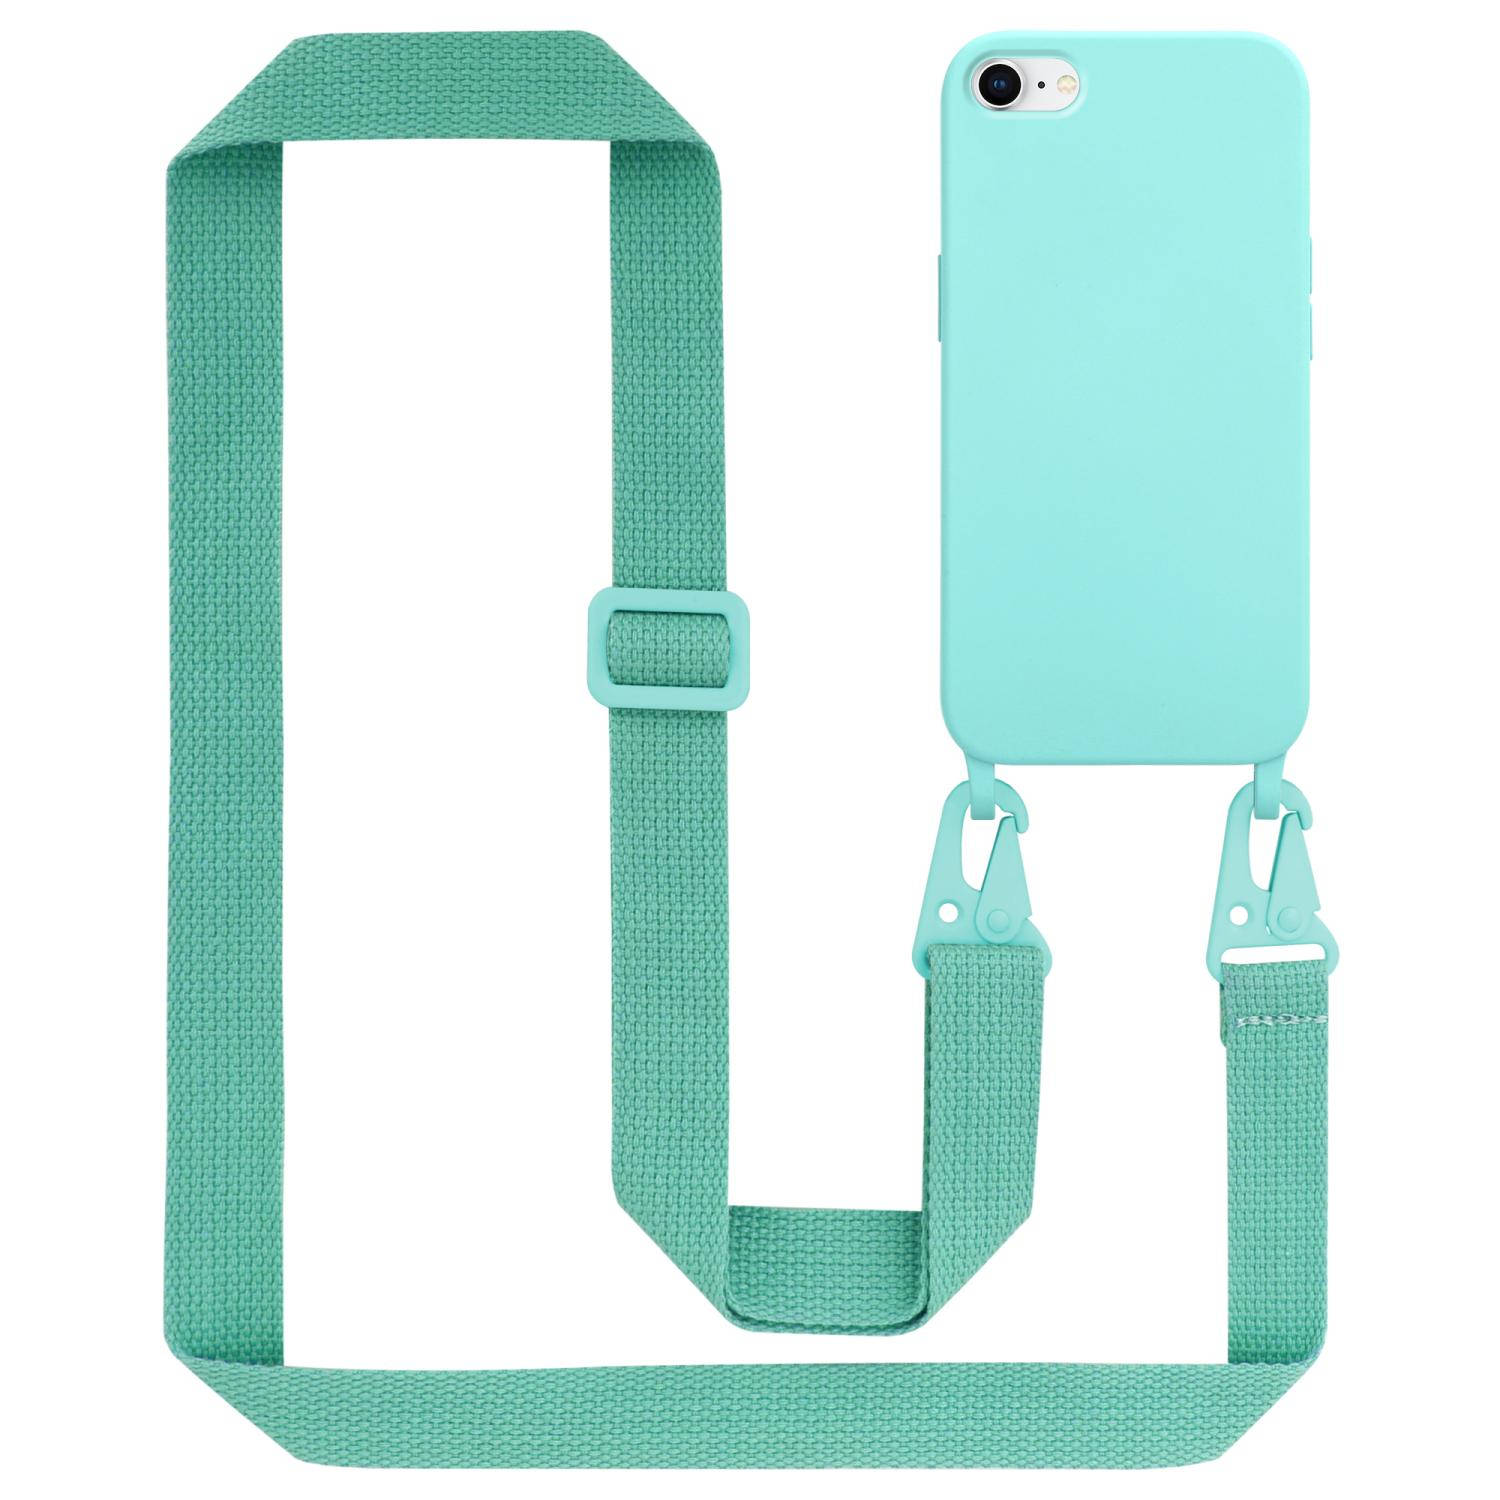 Cadorabo Mobiele telefoon ketting voor Apple iPhone 7 / 7S / 8 / SE 2020 in LIQUID TURKOOIS - Silicone beschermhoes met lengte verstelbare koord riem